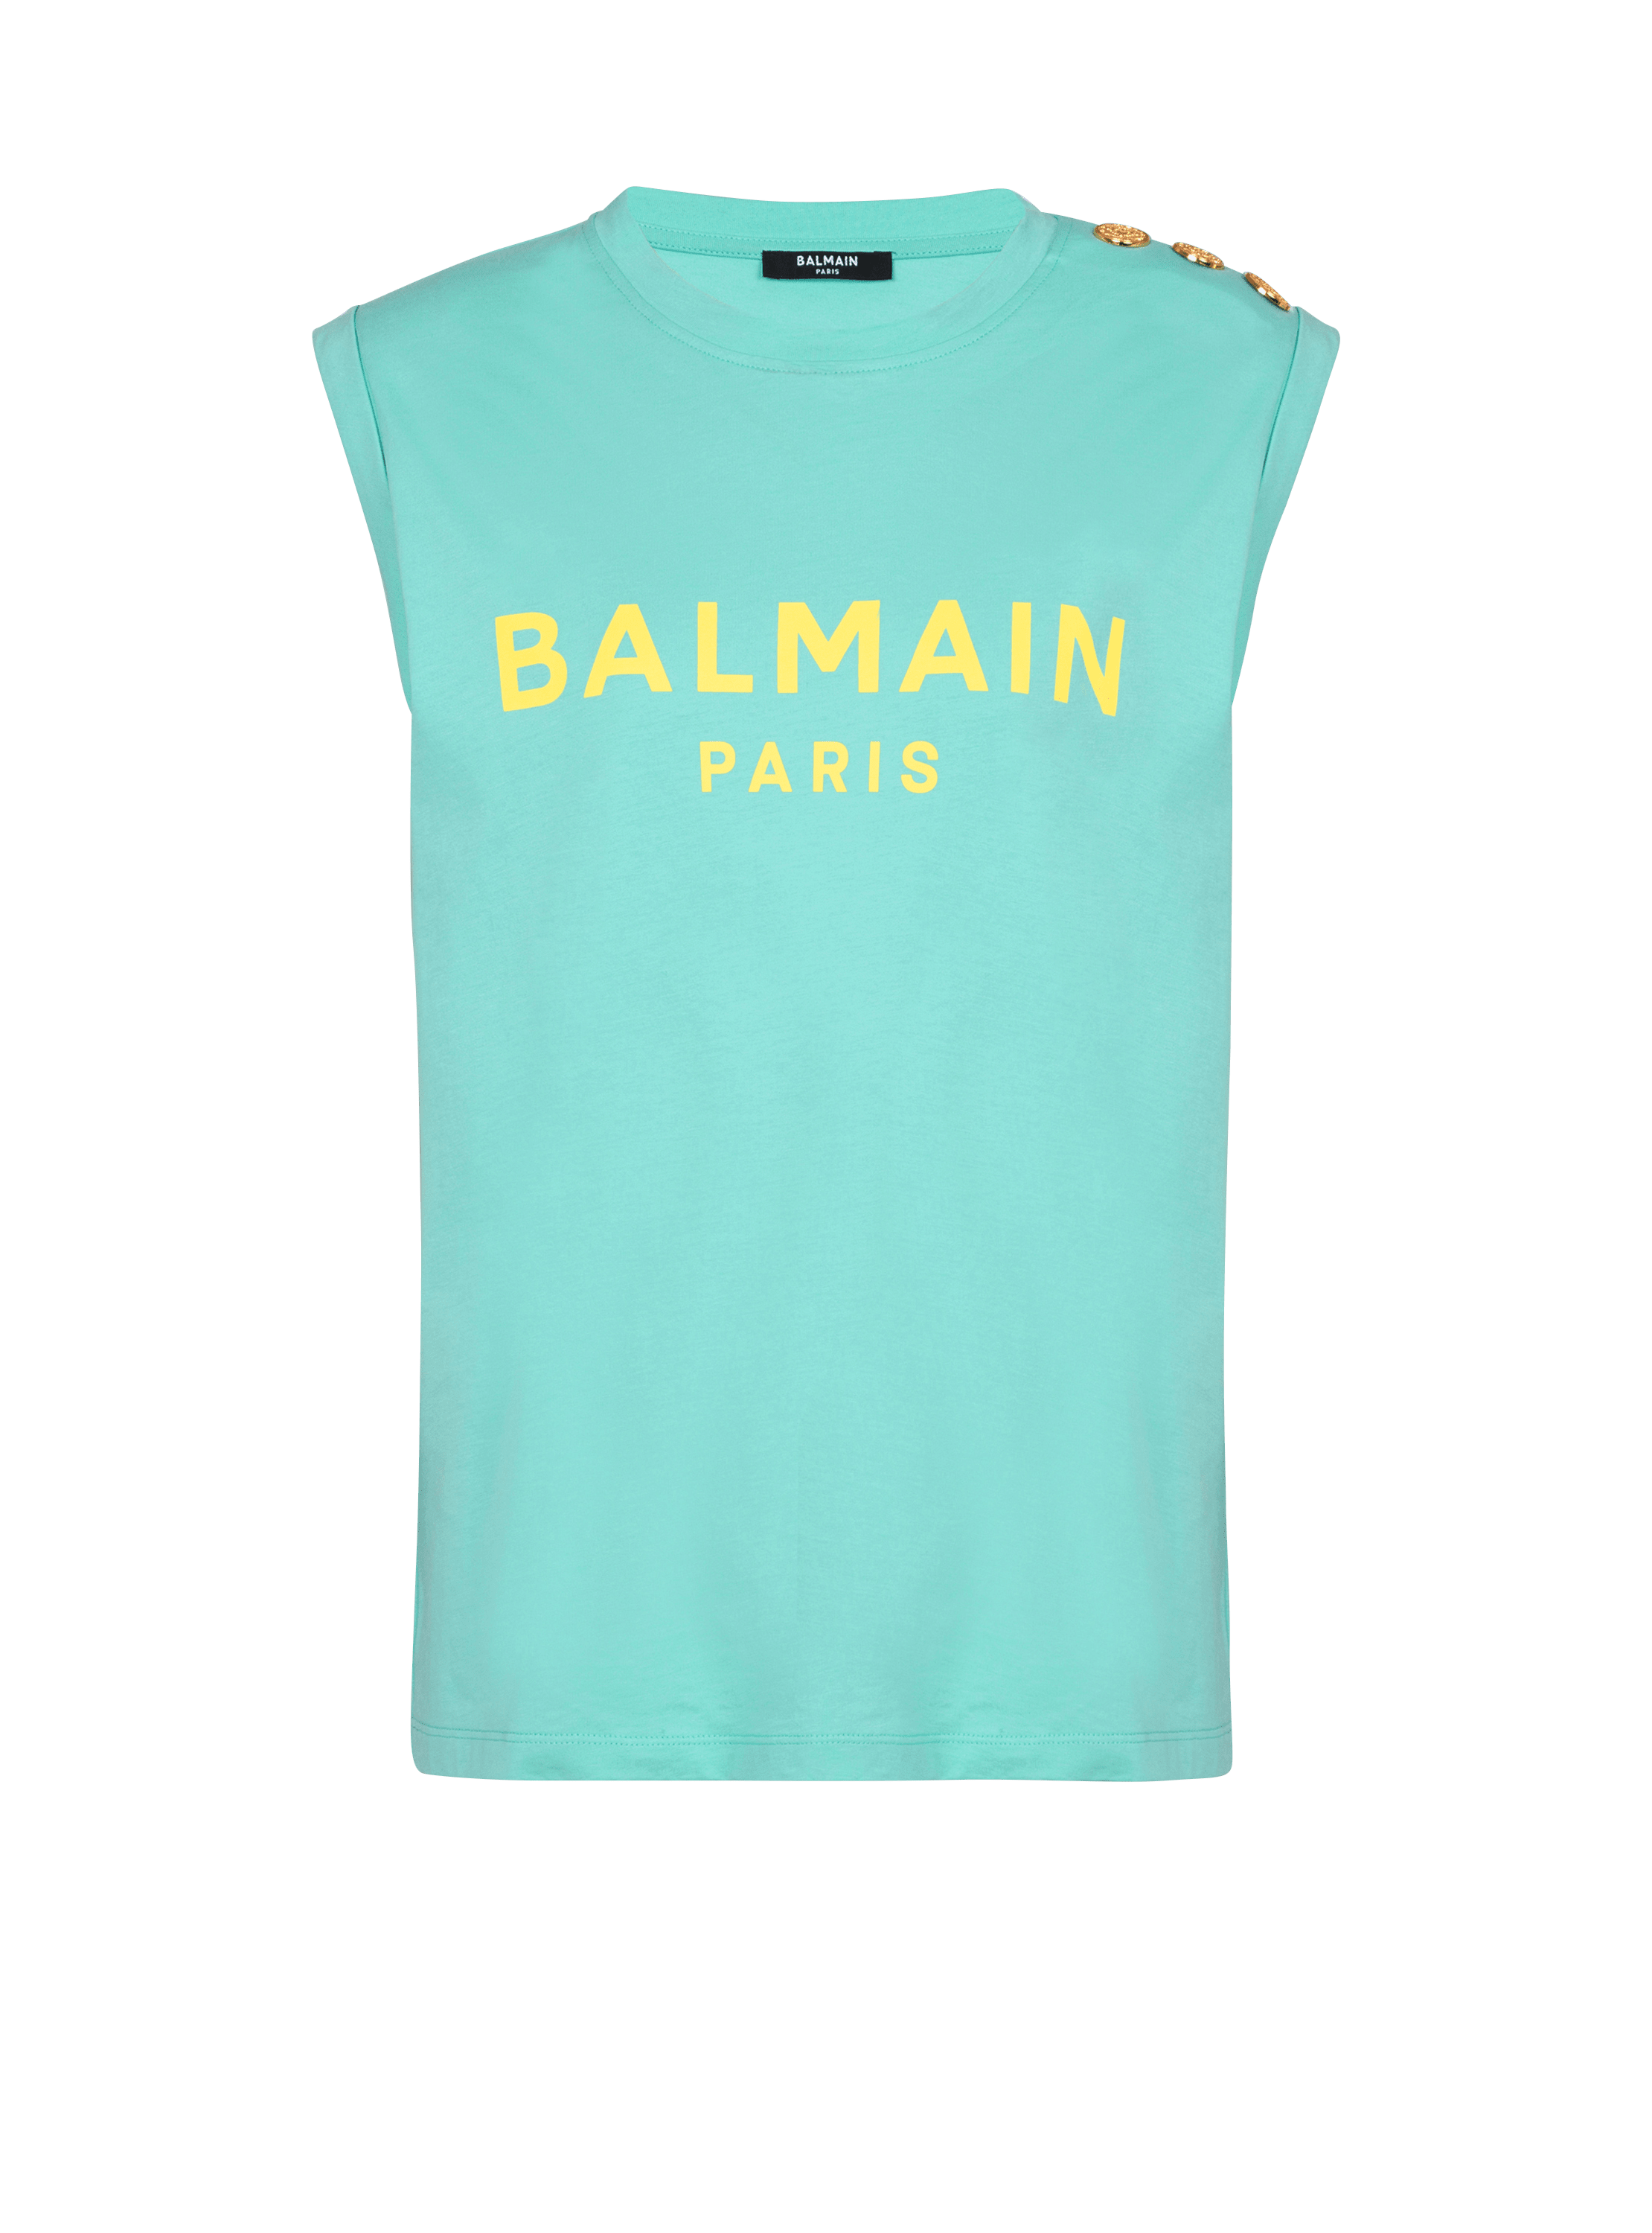 Balmain Paris tank top